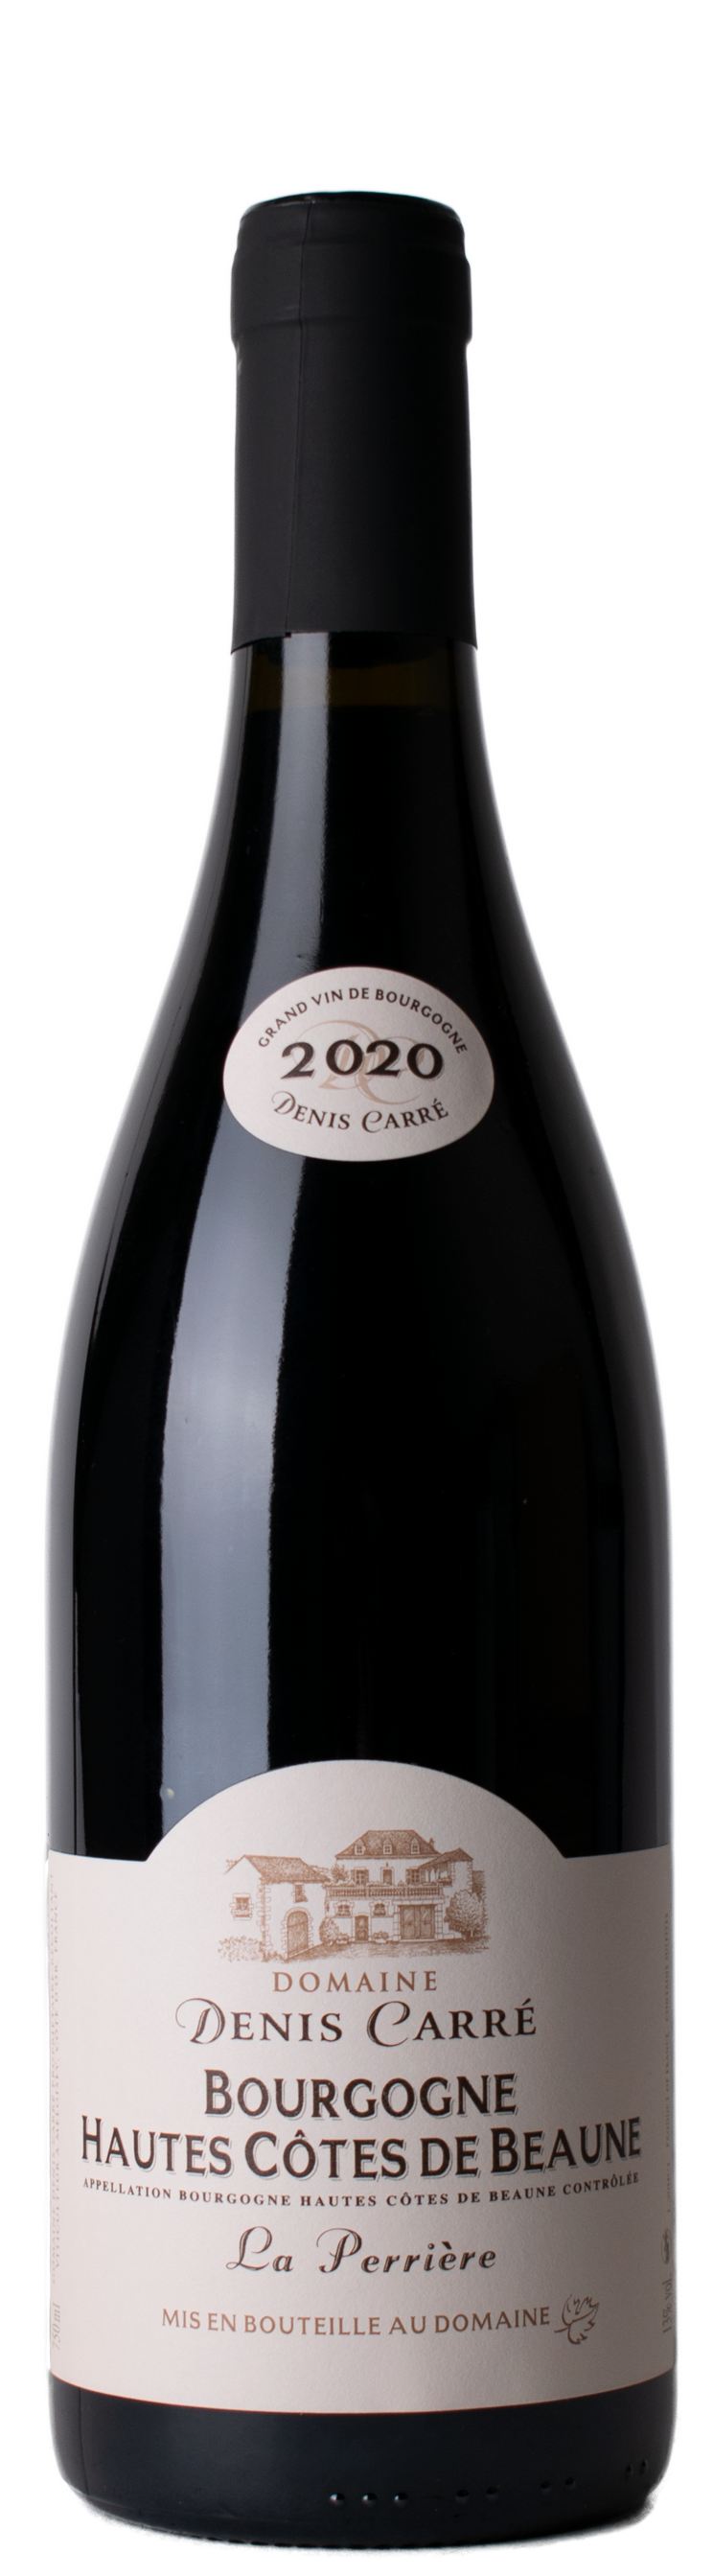 Bourgogne Hautes Cotes de Beaune rouge 2020 Perriere